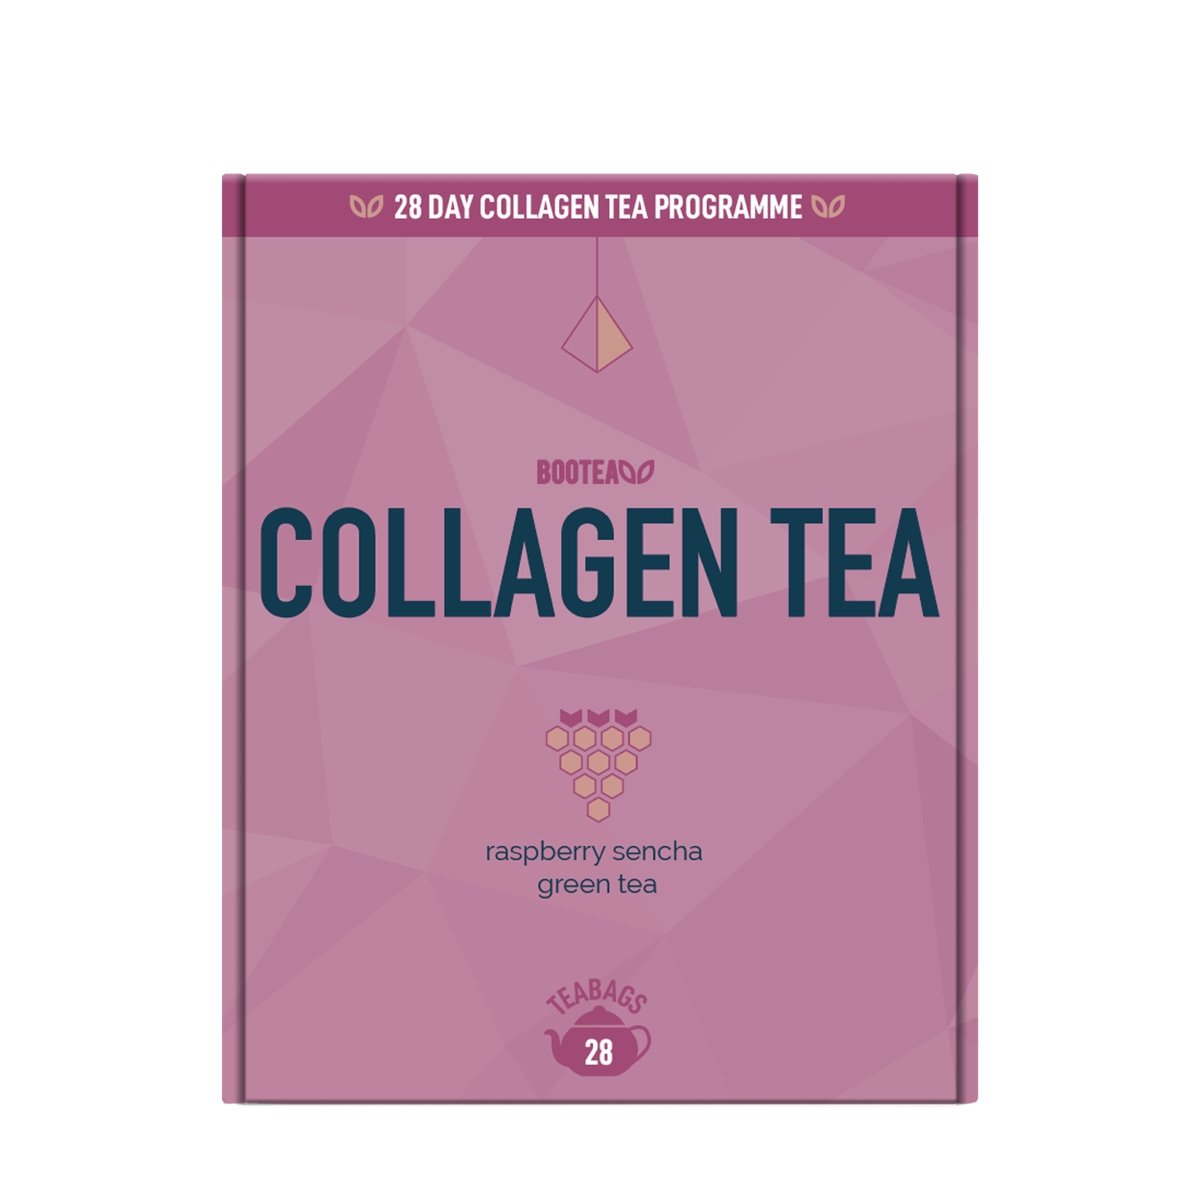 Collagen Tea Offer - Bootea